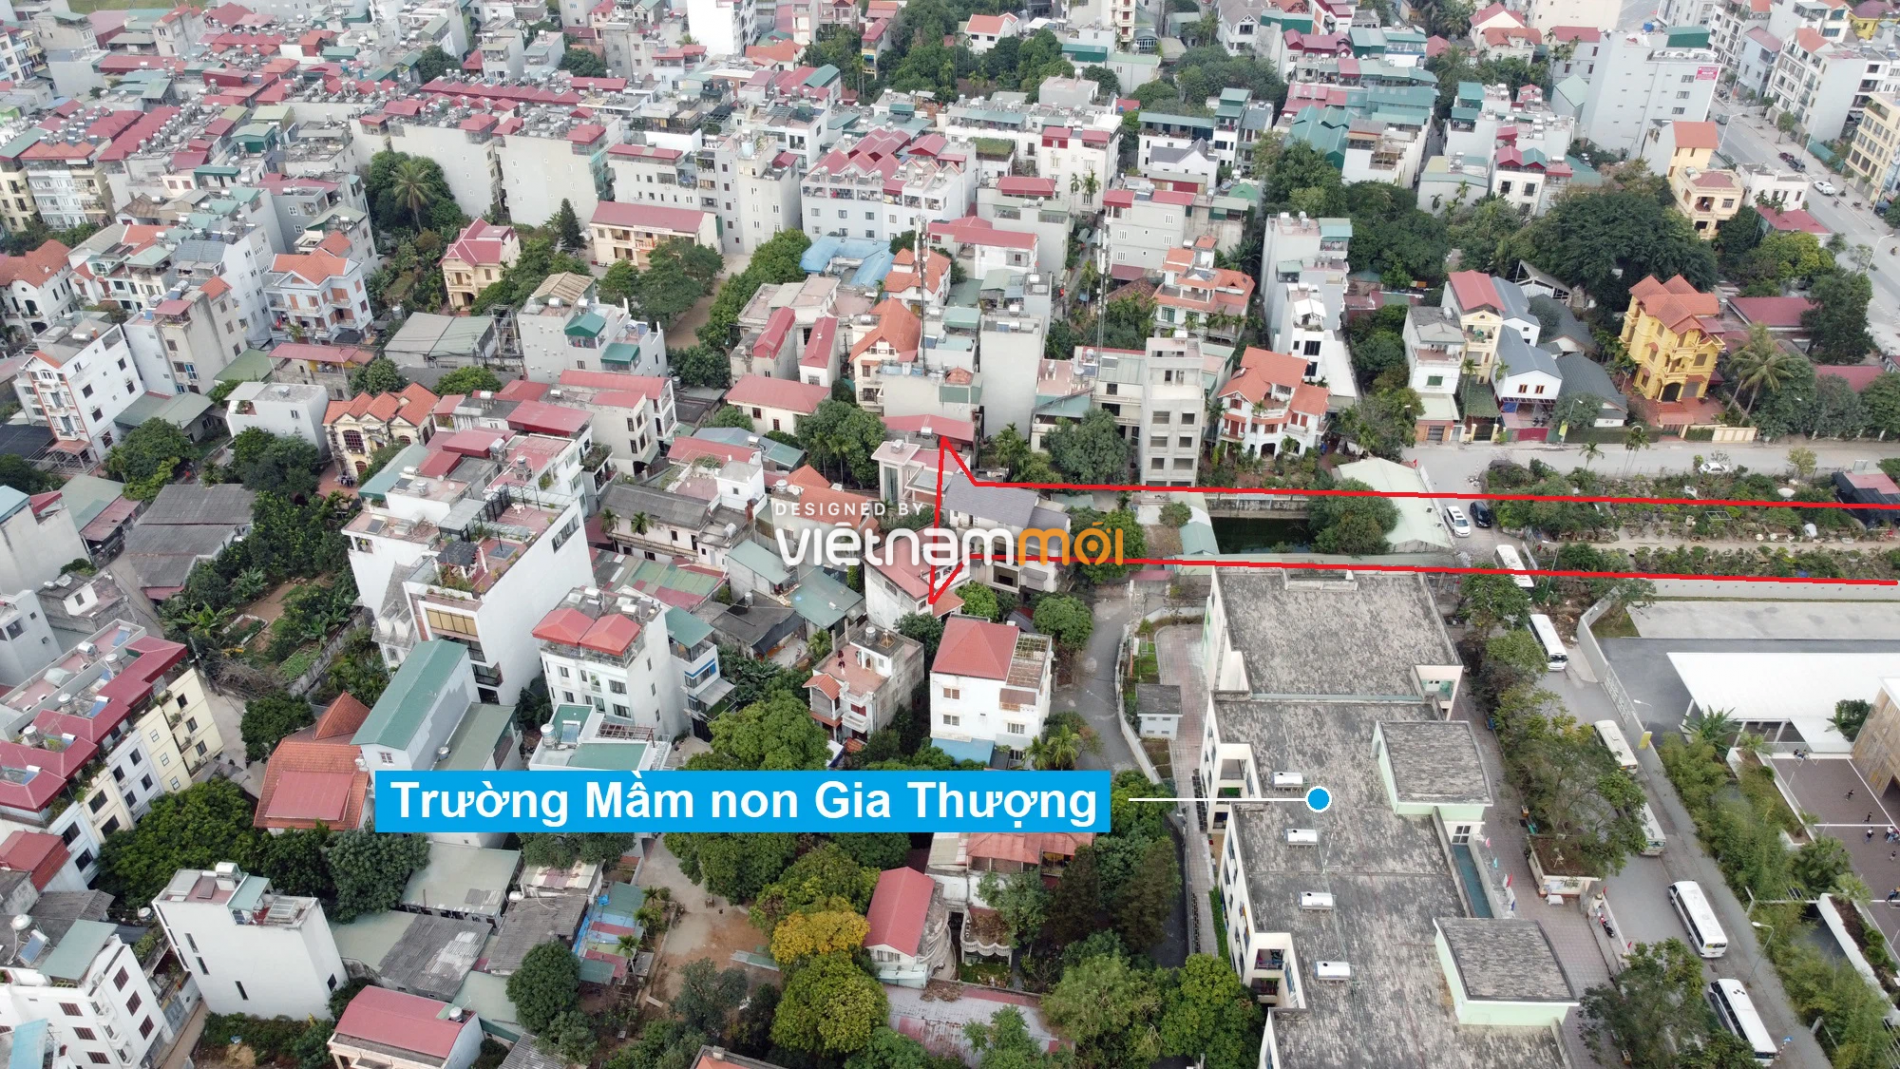 Những khu đất sắp thu hồi để mở đường ở phường Ngọc Thụy, Long Biên, Hà Nội (phần 2) - Ảnh 16.